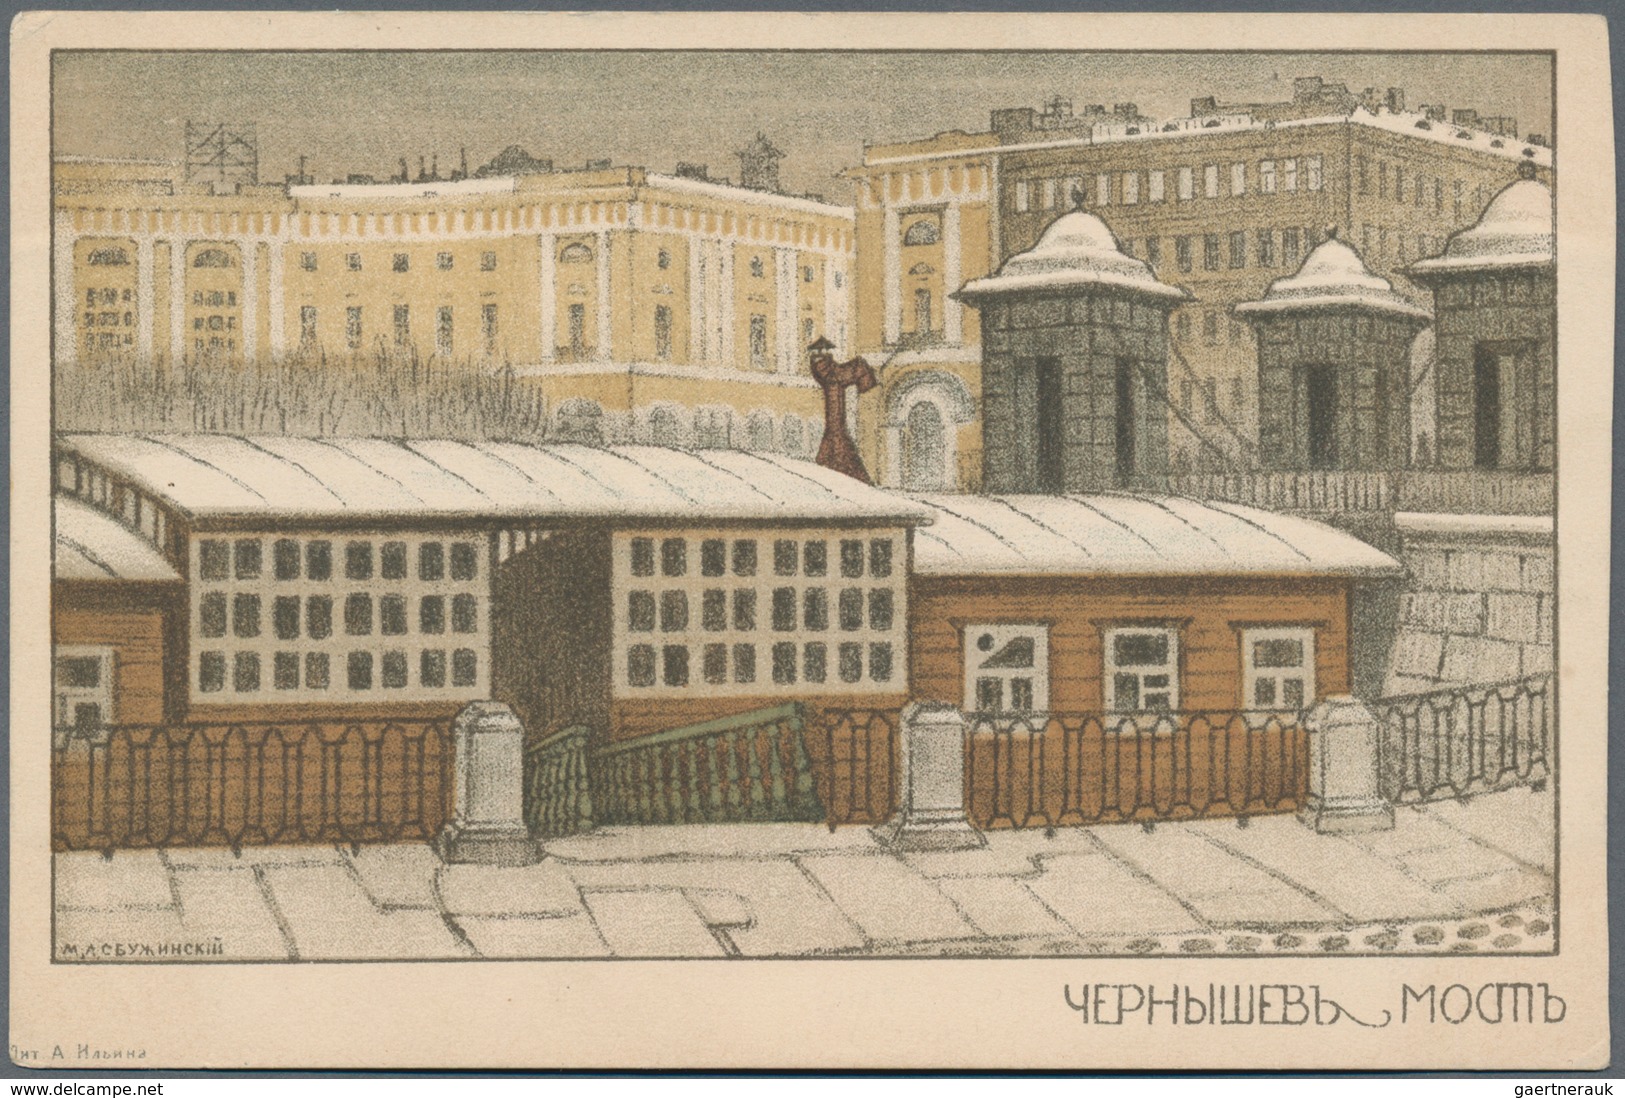 Ansichtskarten: Künstler / Artists: RUSSISCHE KÜNSTLER, schöner Bestand an 152 historischen Ansichts